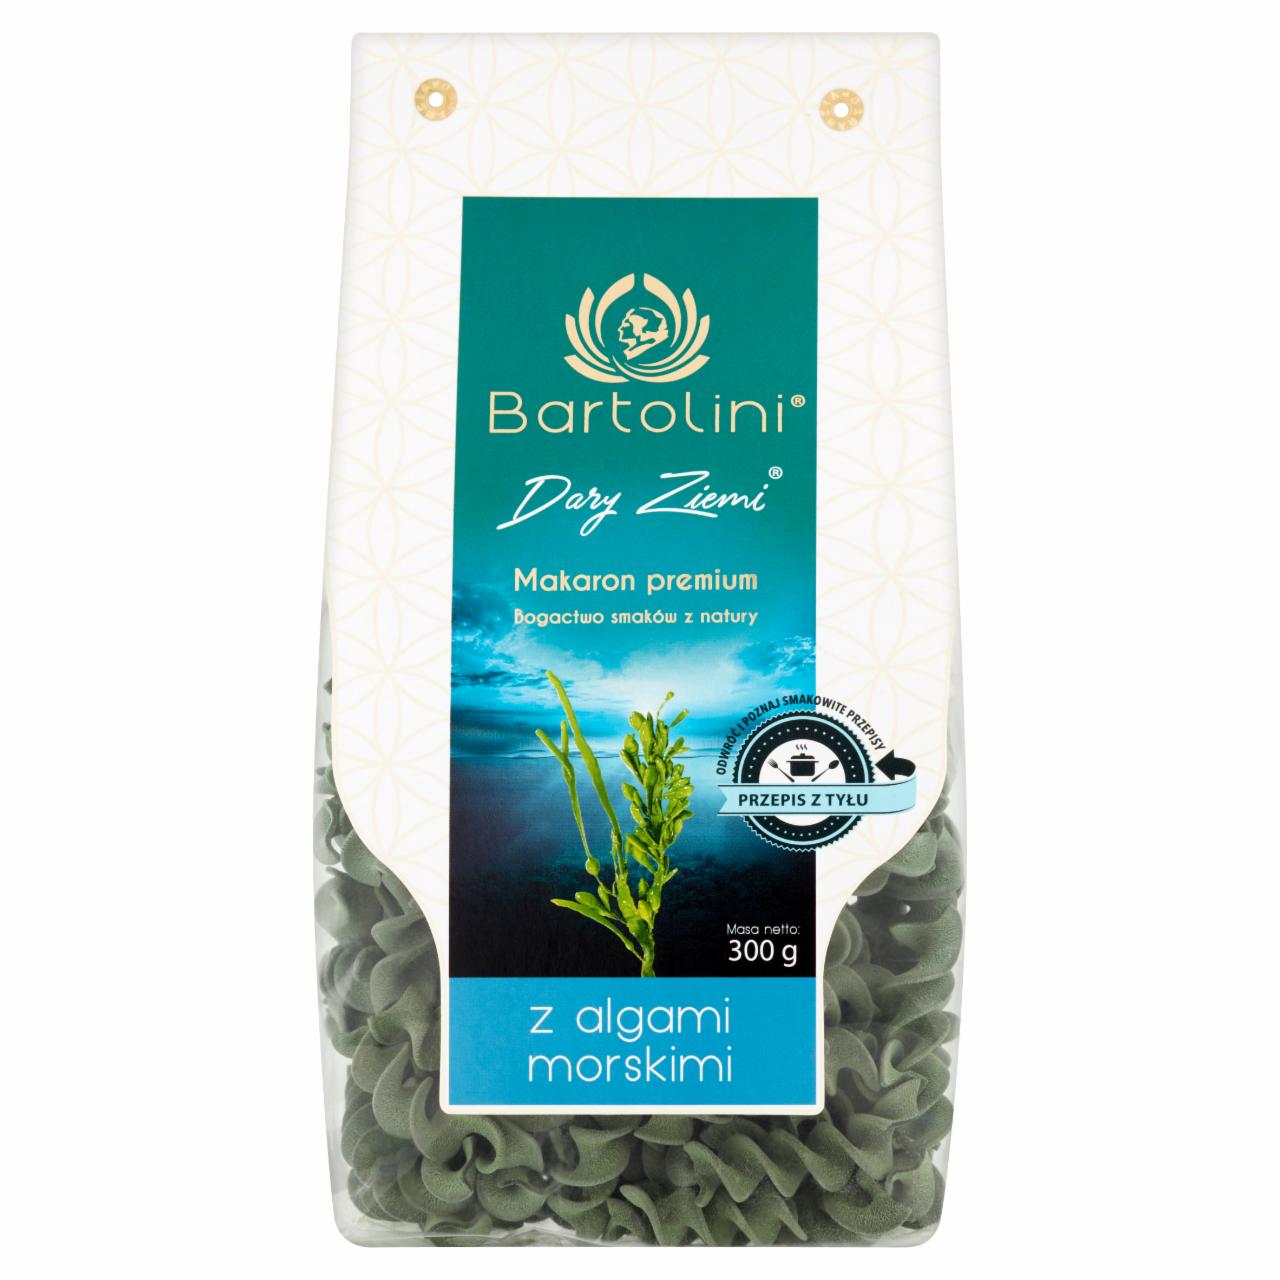 Zdjęcia - Bartolini Dary Ziemi Makaron Premium z algami morskimi świderek nr 3 300 g